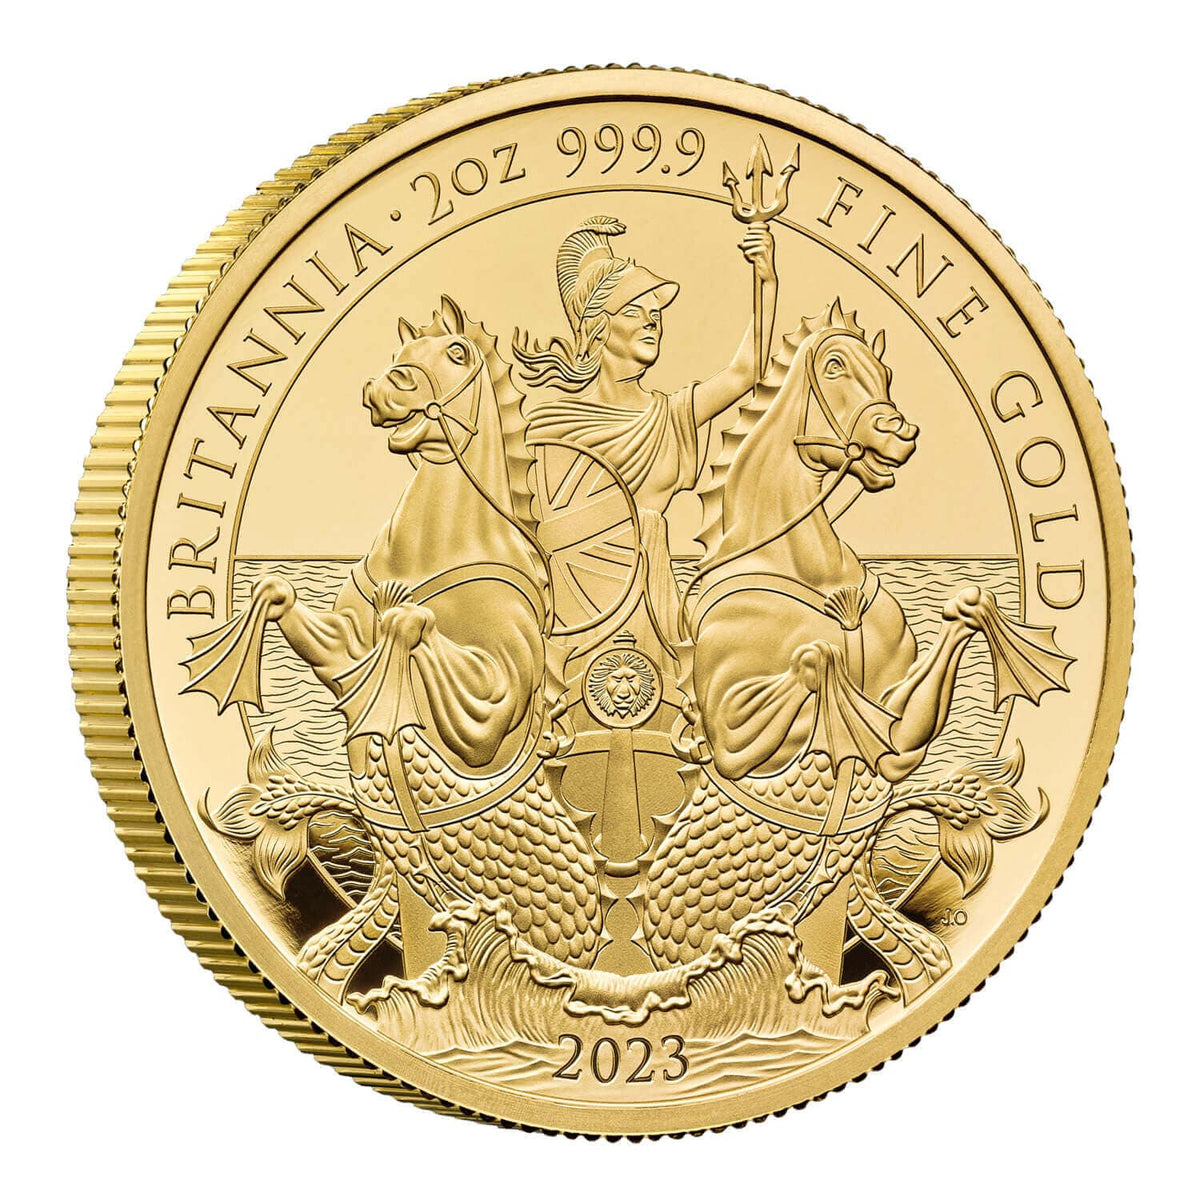 2023 イギリス ブリタニア 2オンス プルーフ金貨【限定125枚】 | アンティークコインギャラリア